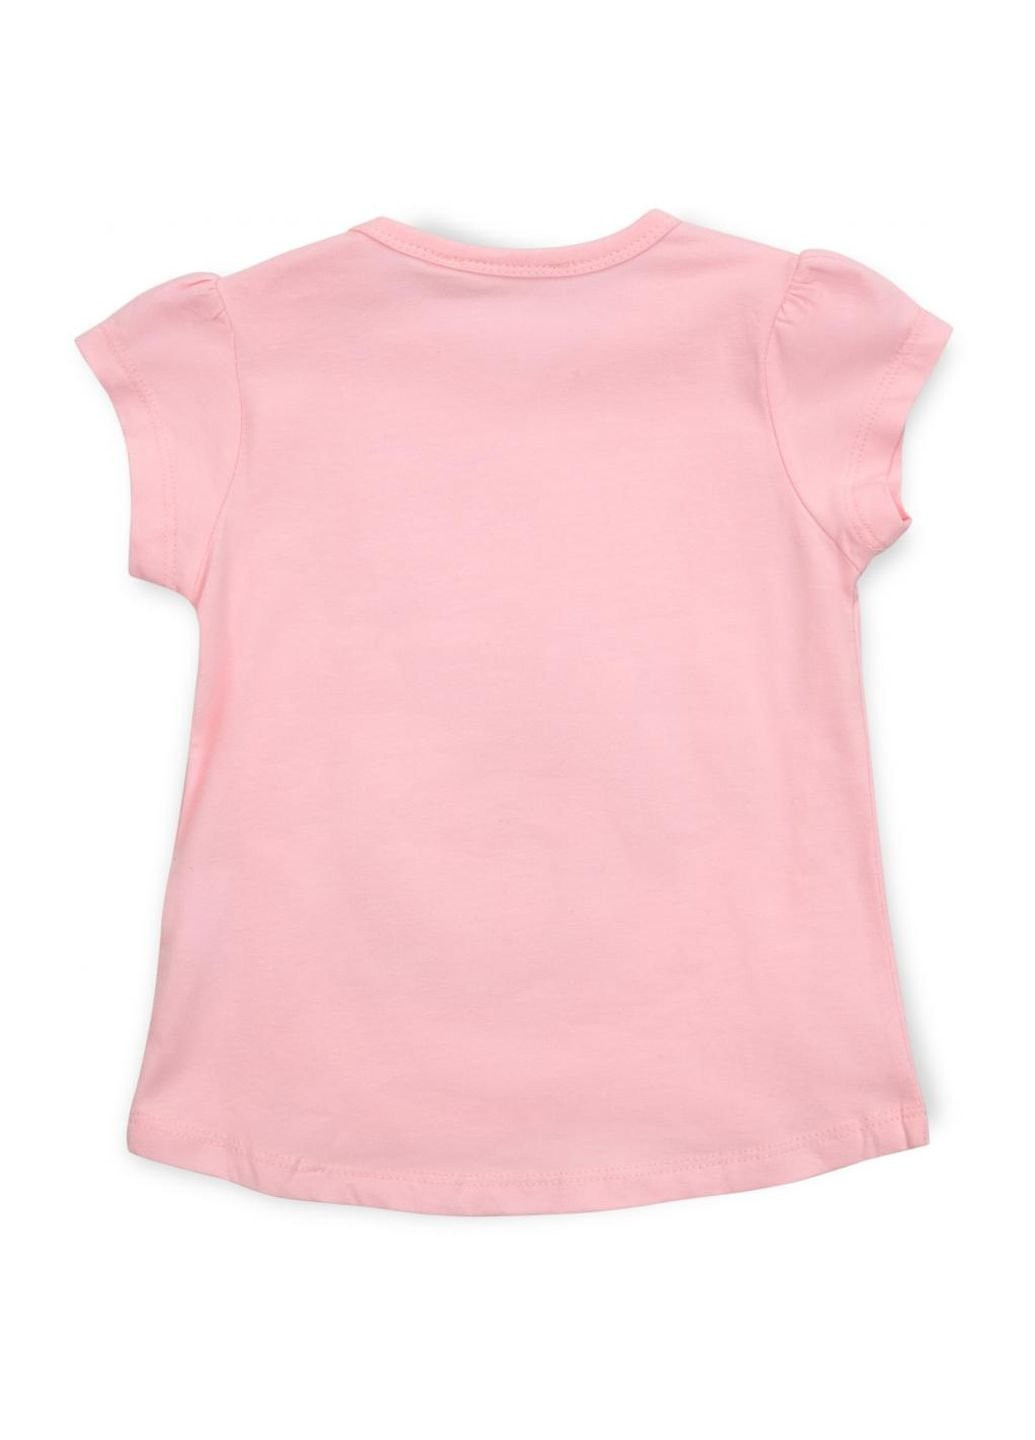 Светло-серый летний набор детской одежды со слоником (13376-98g-pink) Breeze